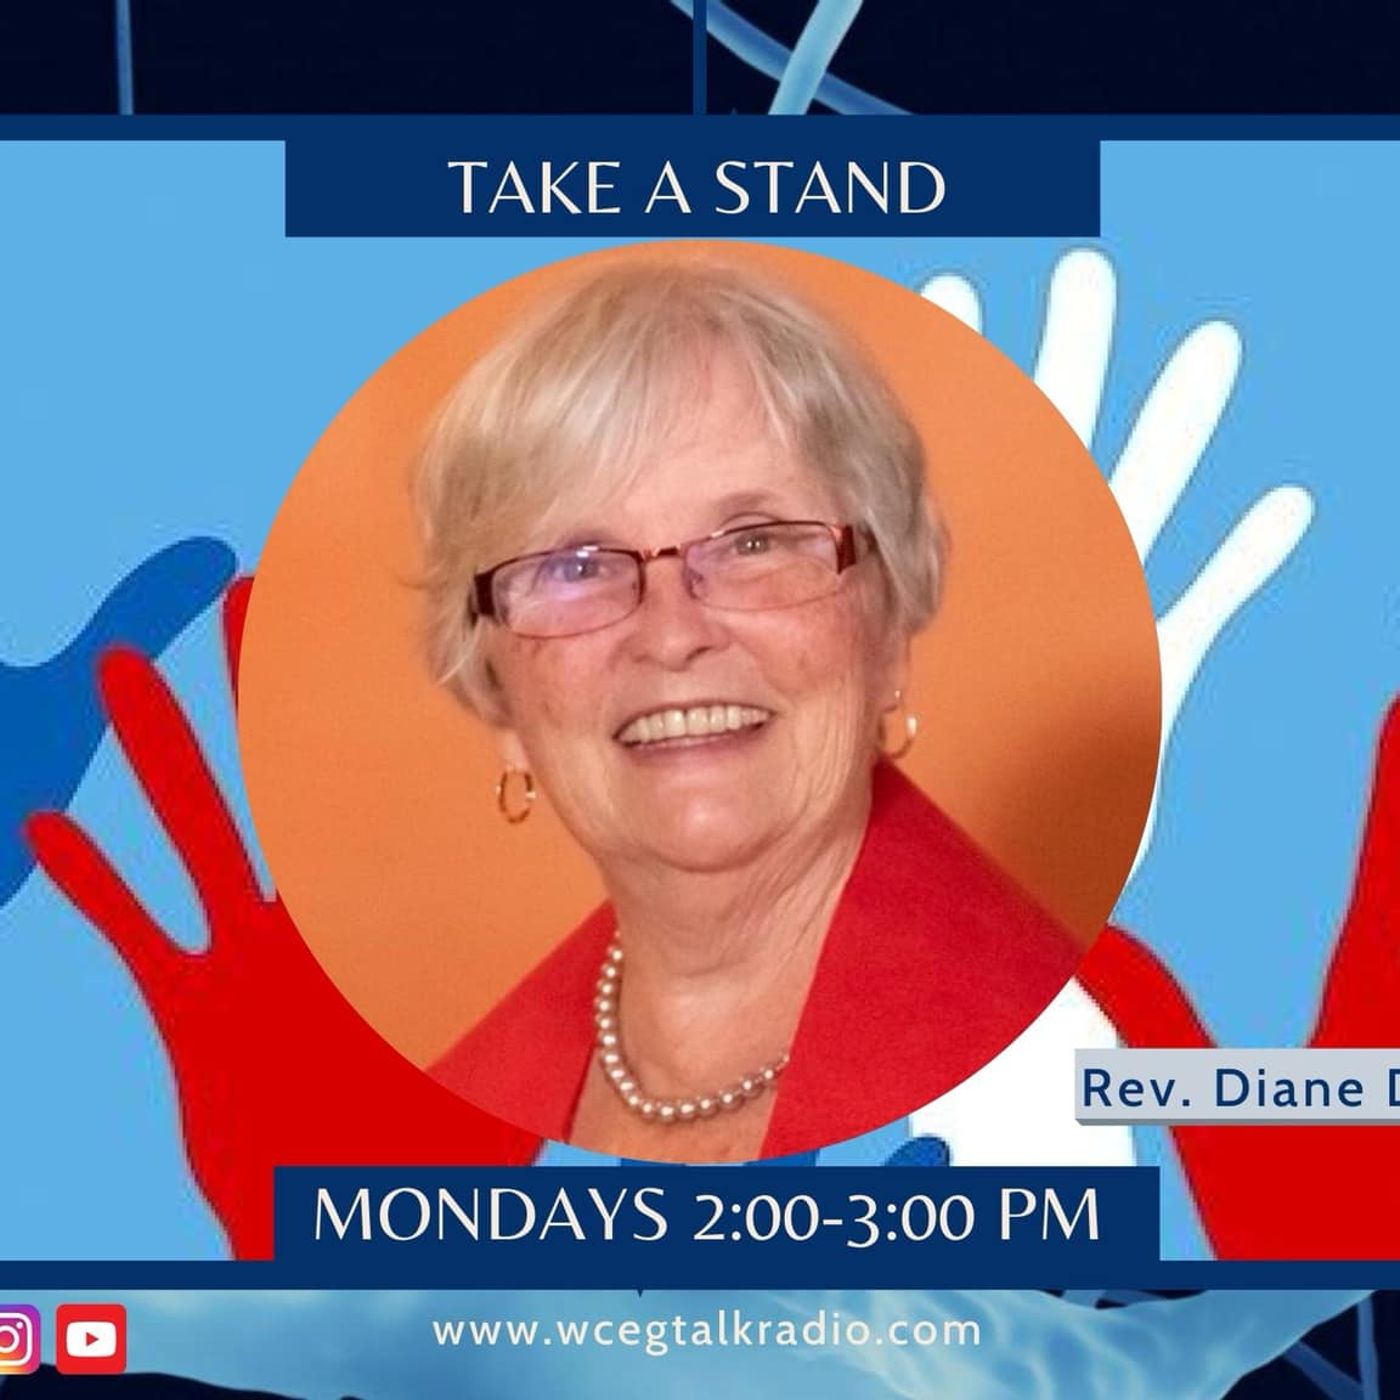 Take A Stand: Rev. Diane Dougherty